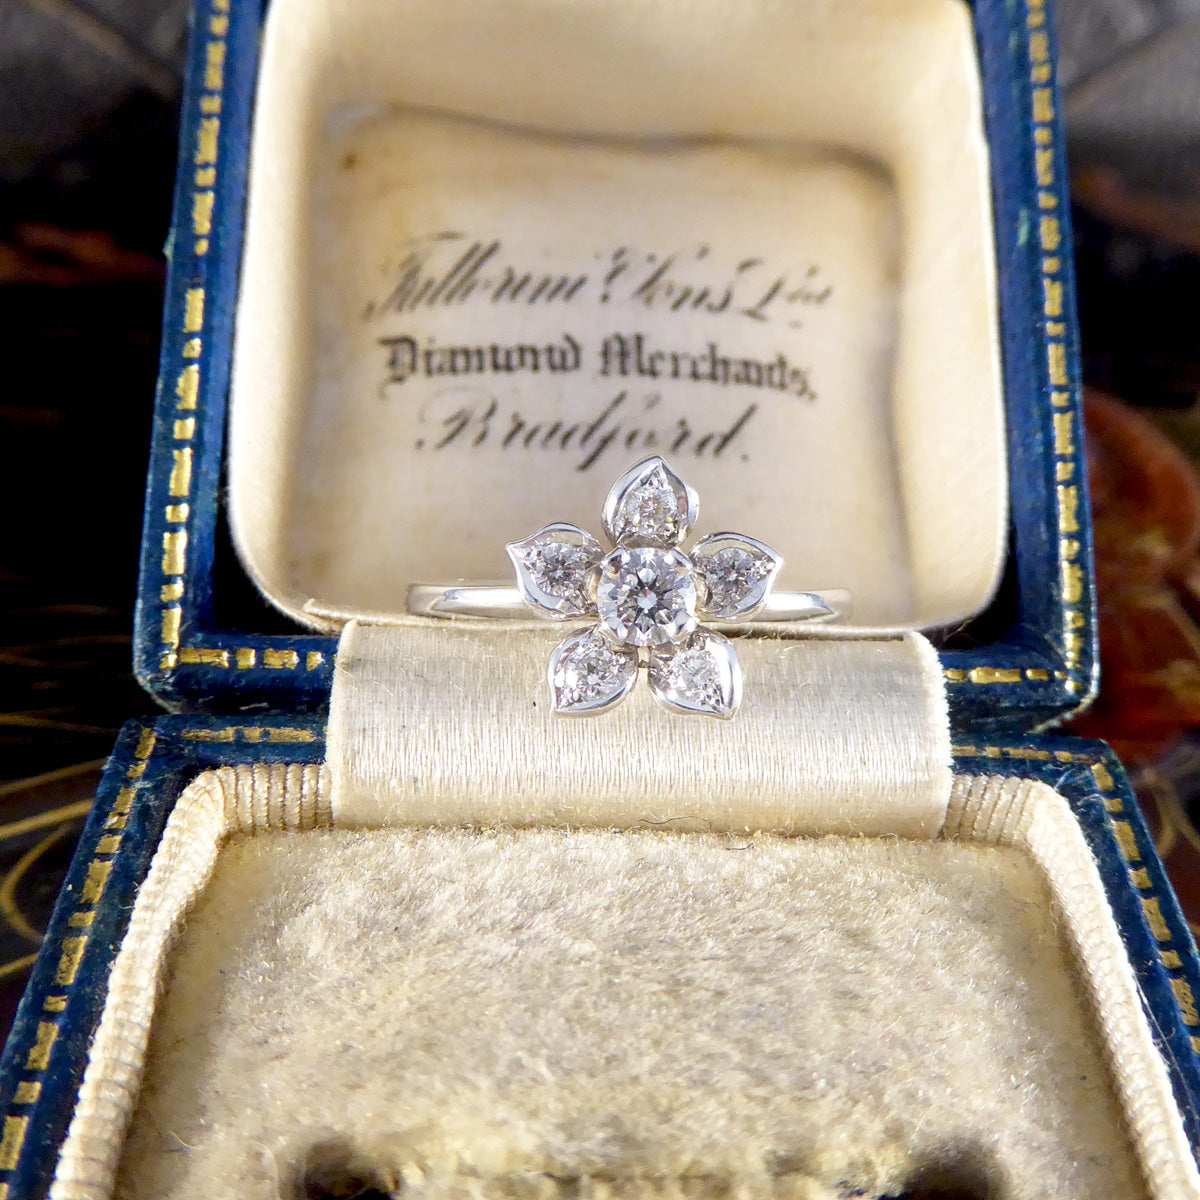 Modern Diamond Set Flower Ring in 18ct White Gold